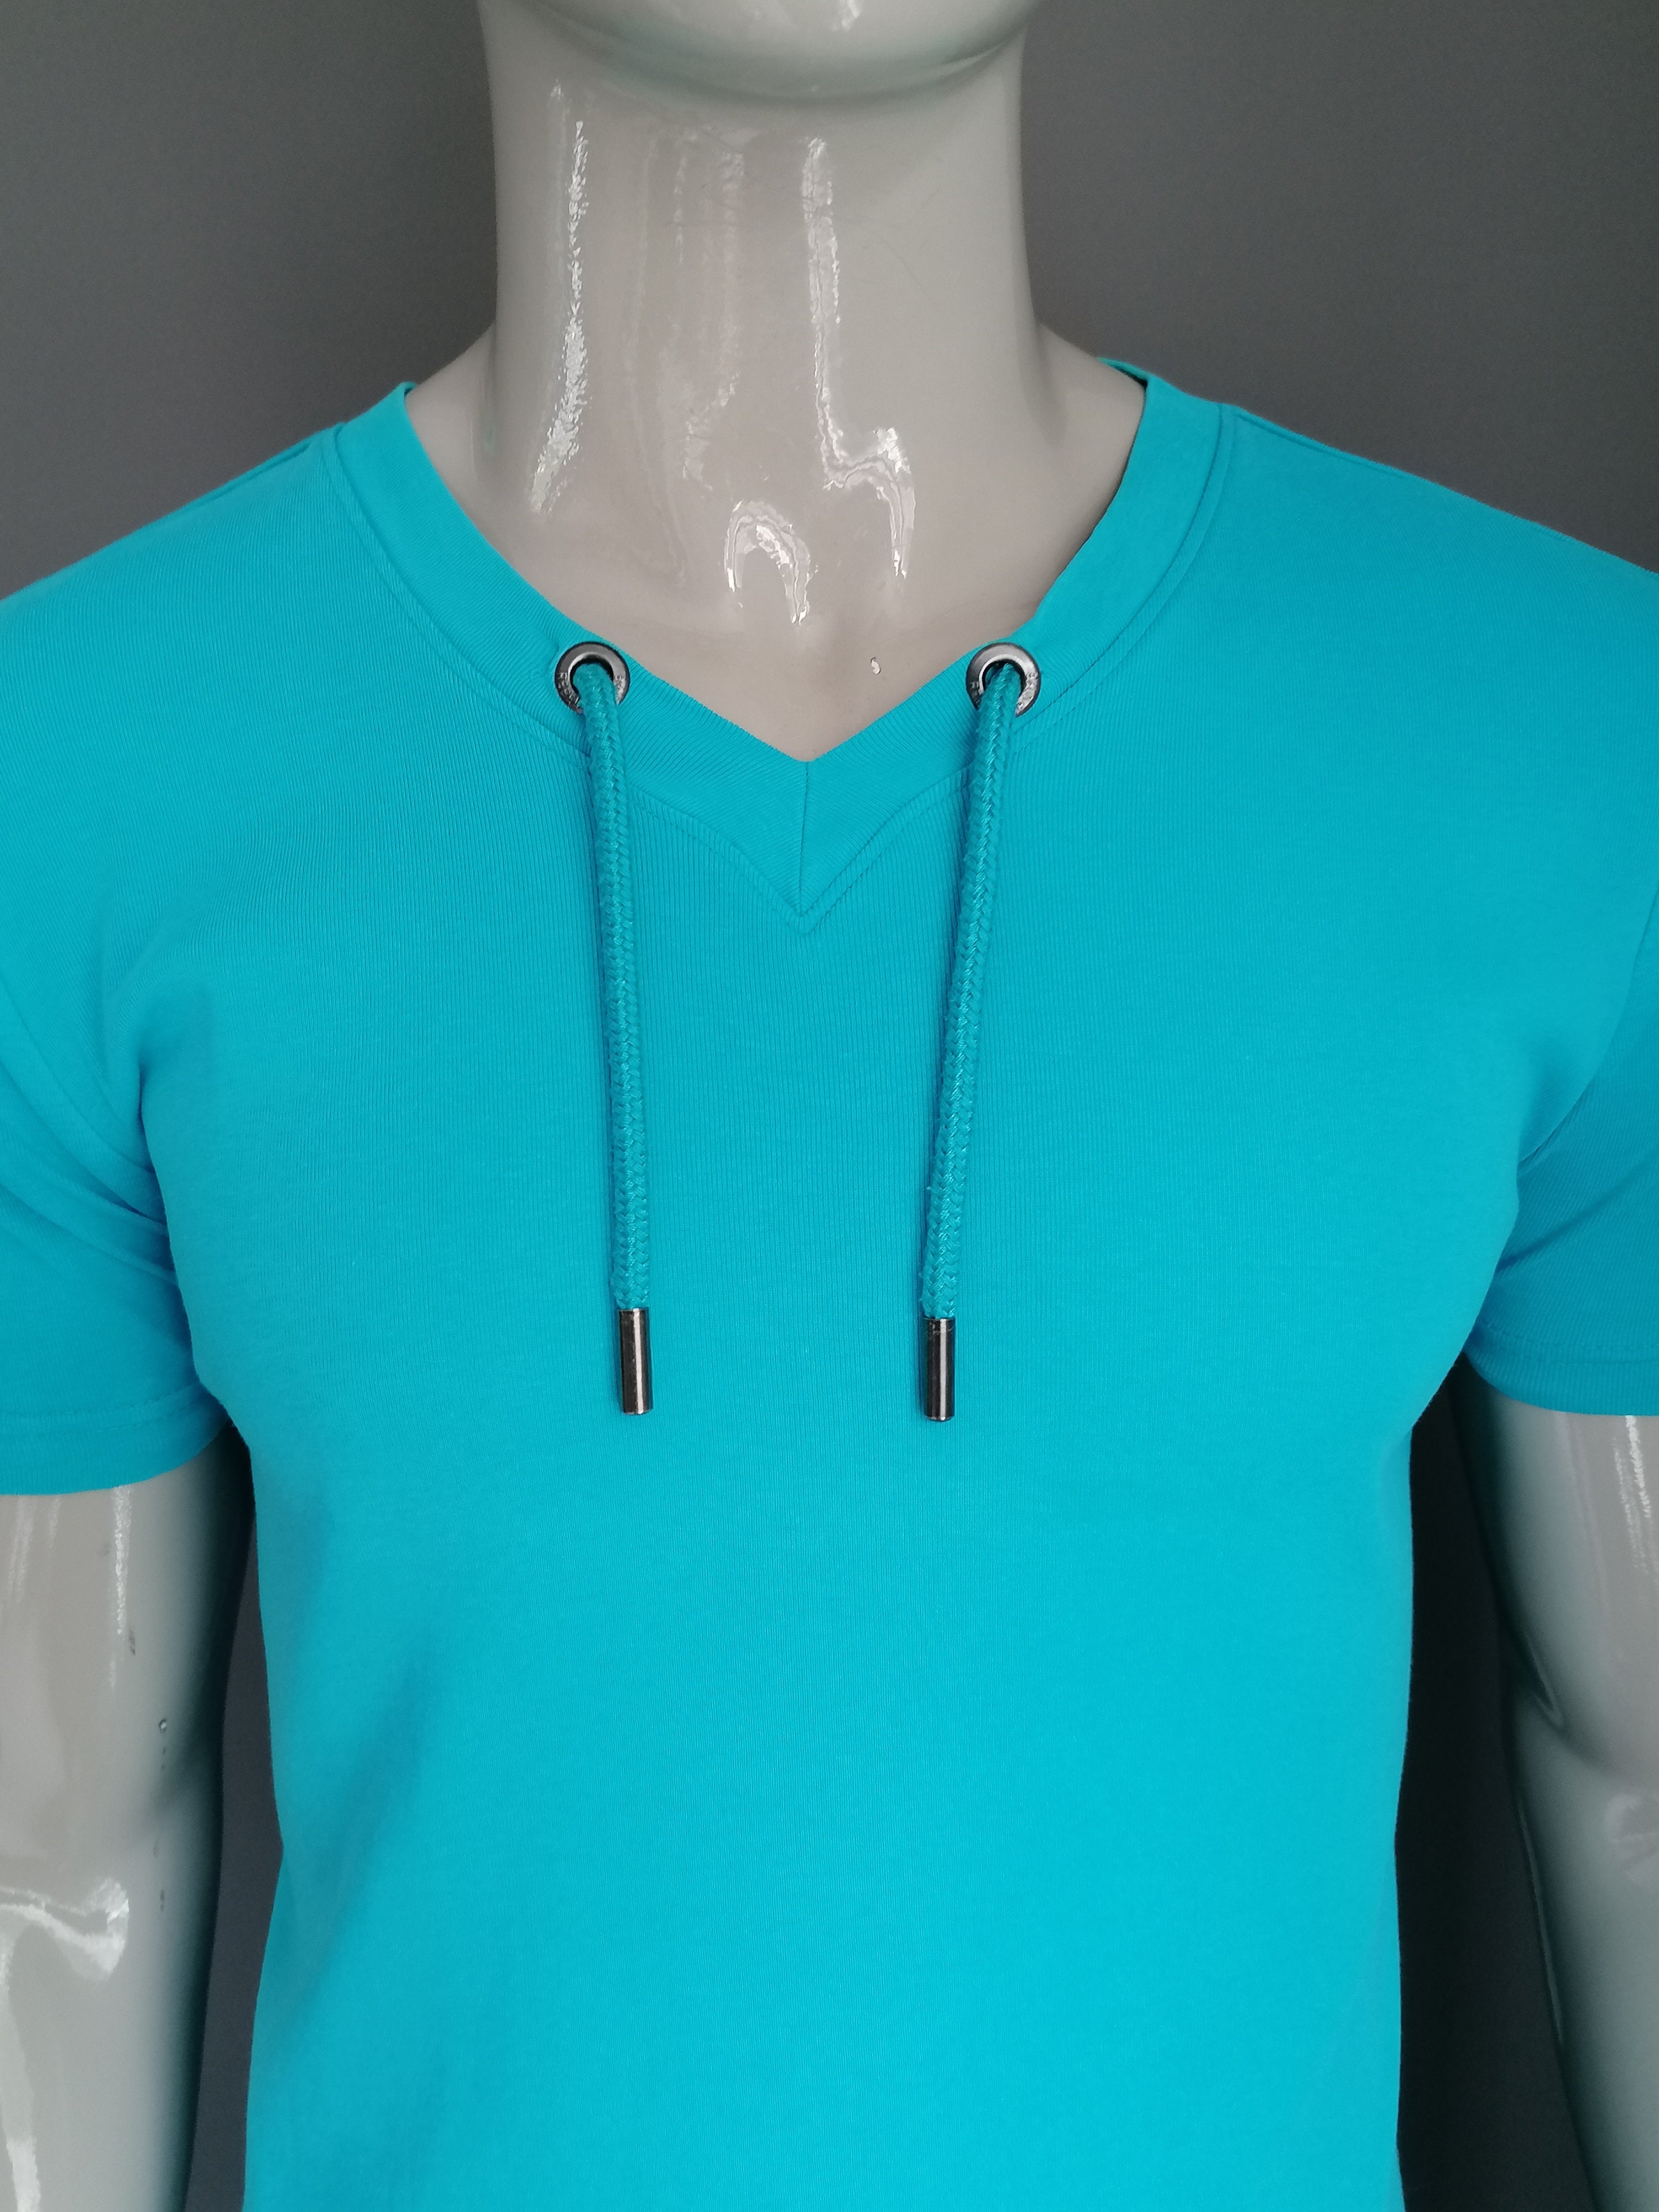 Roei uit werkwoord Rationeel CoolCat shirt met V-Hals en touwtjes. Blauw gekleurd. Maat M. | EcoGents